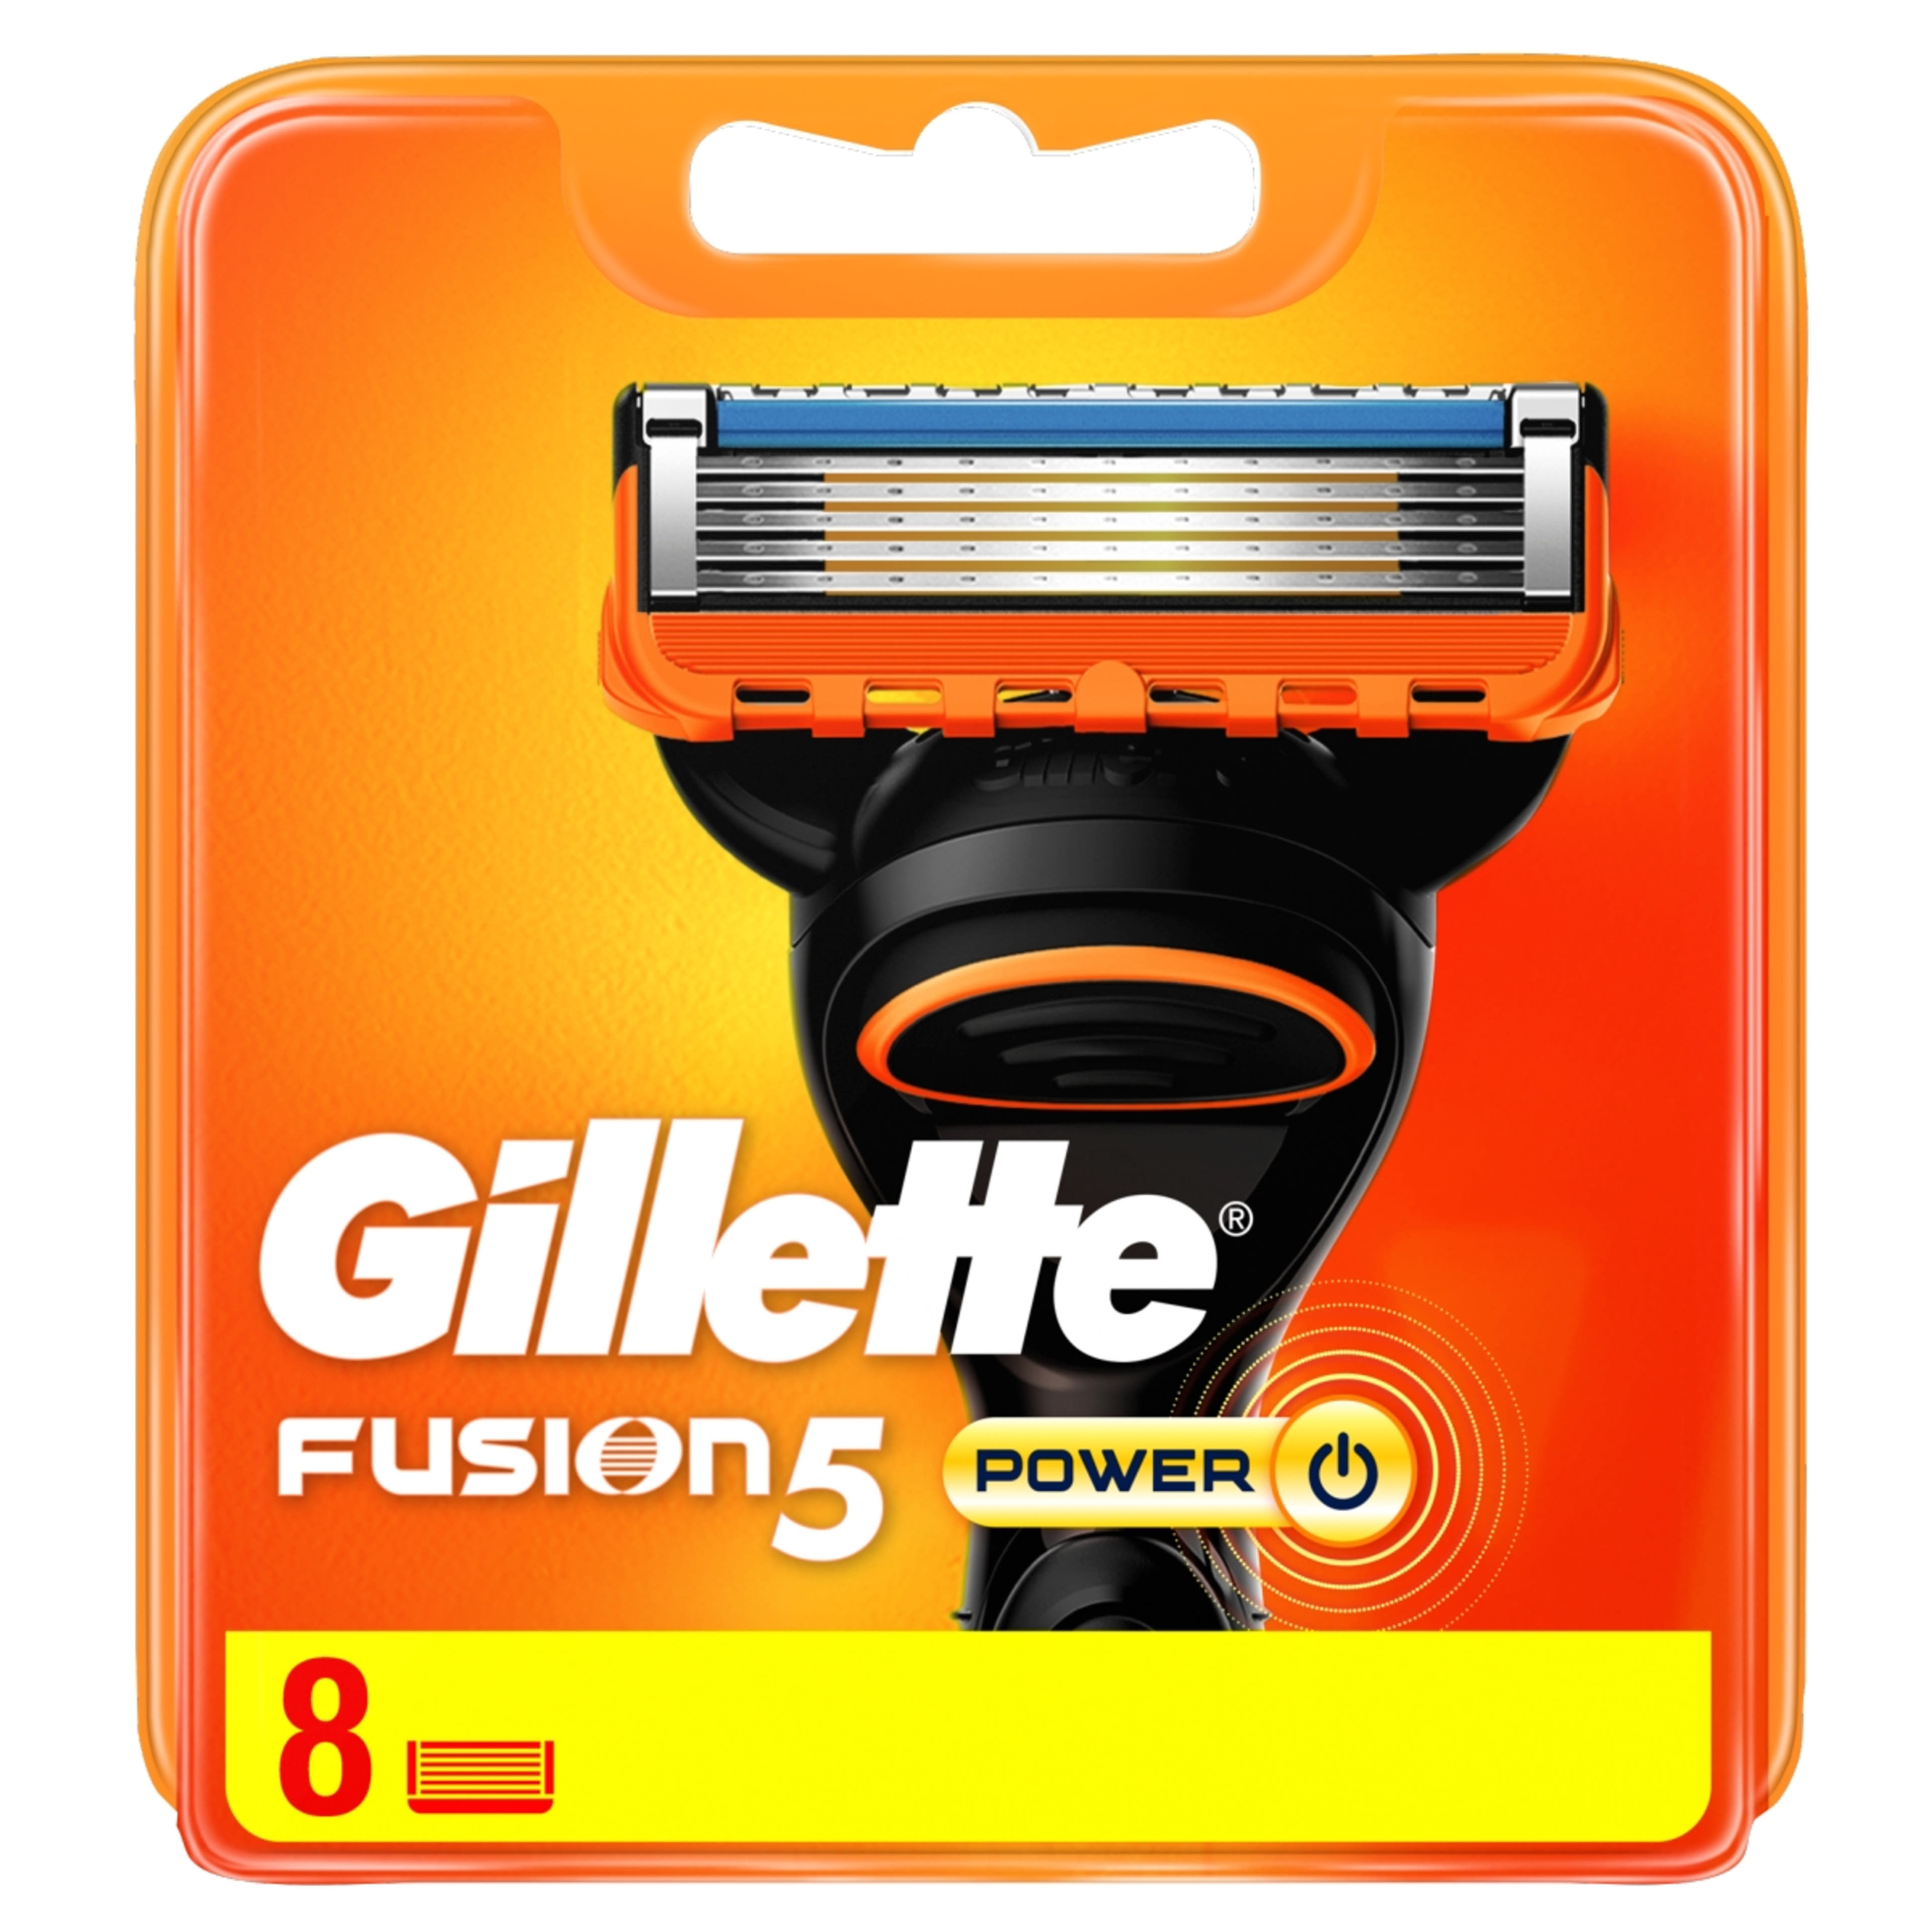 Gillette Fusion5 Power borotvabetét - 8 db-1